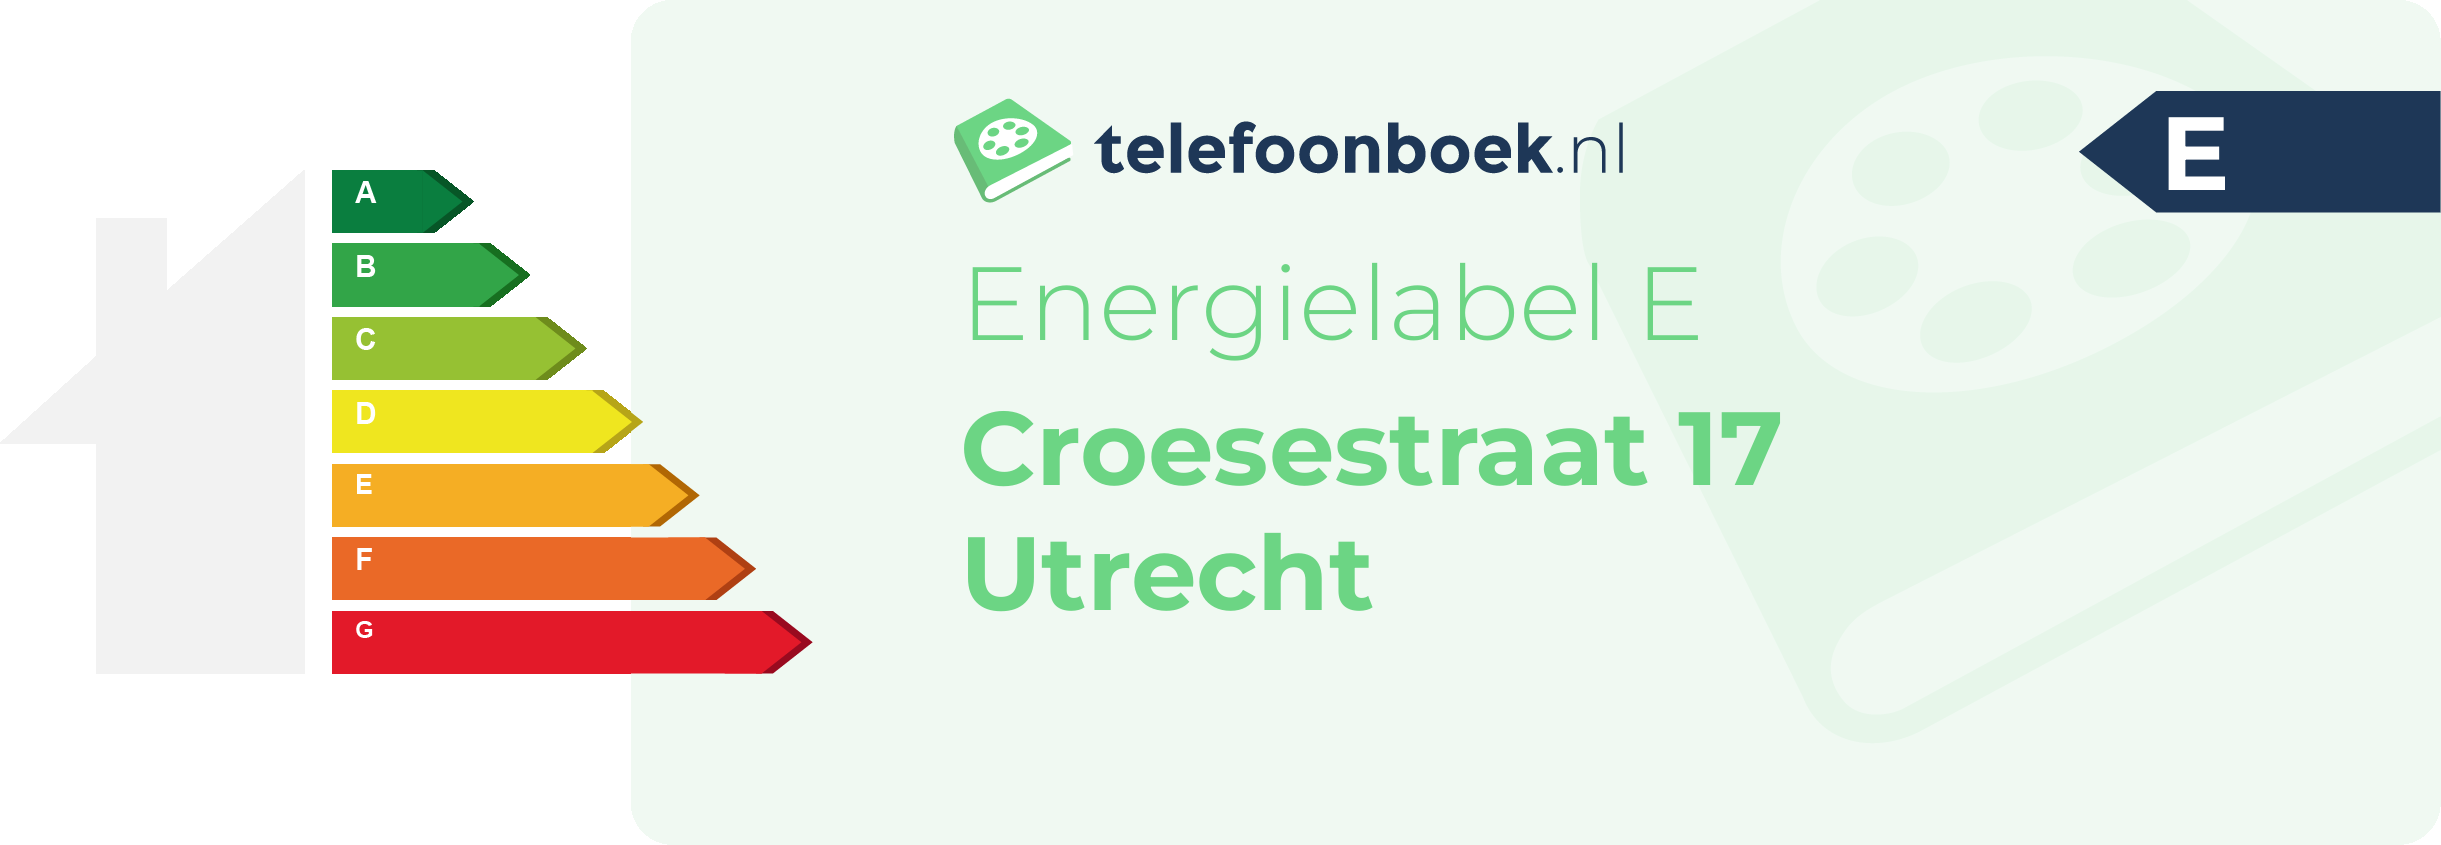 Energielabel Croesestraat 17 Utrecht